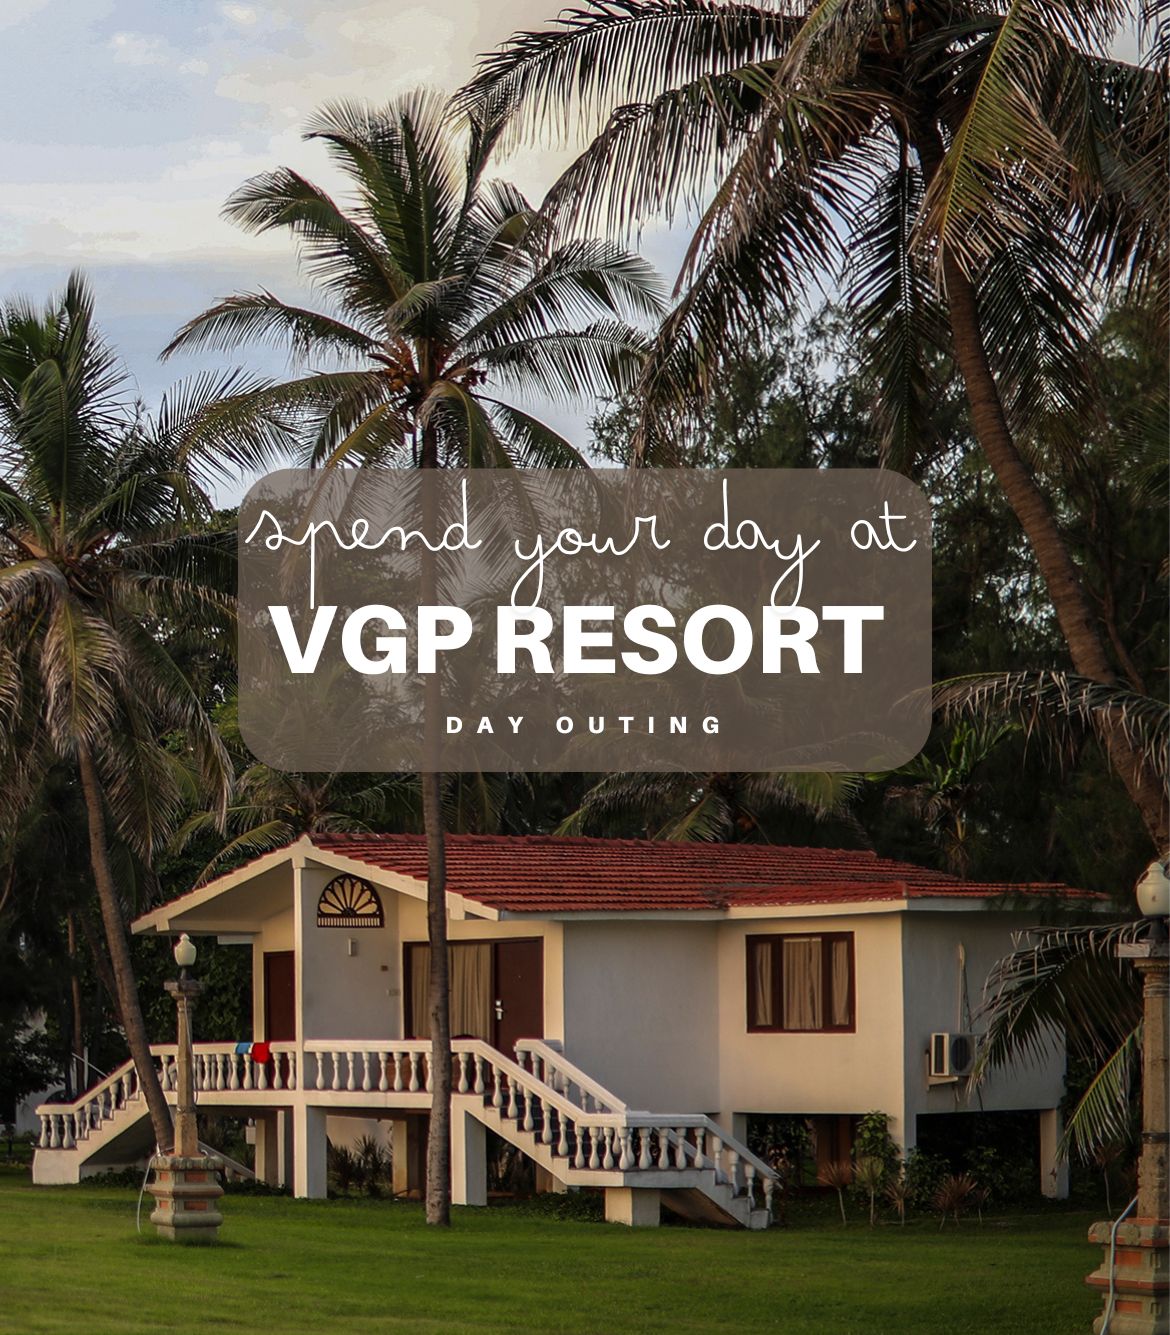 VGP Resort Day Outing Chennai